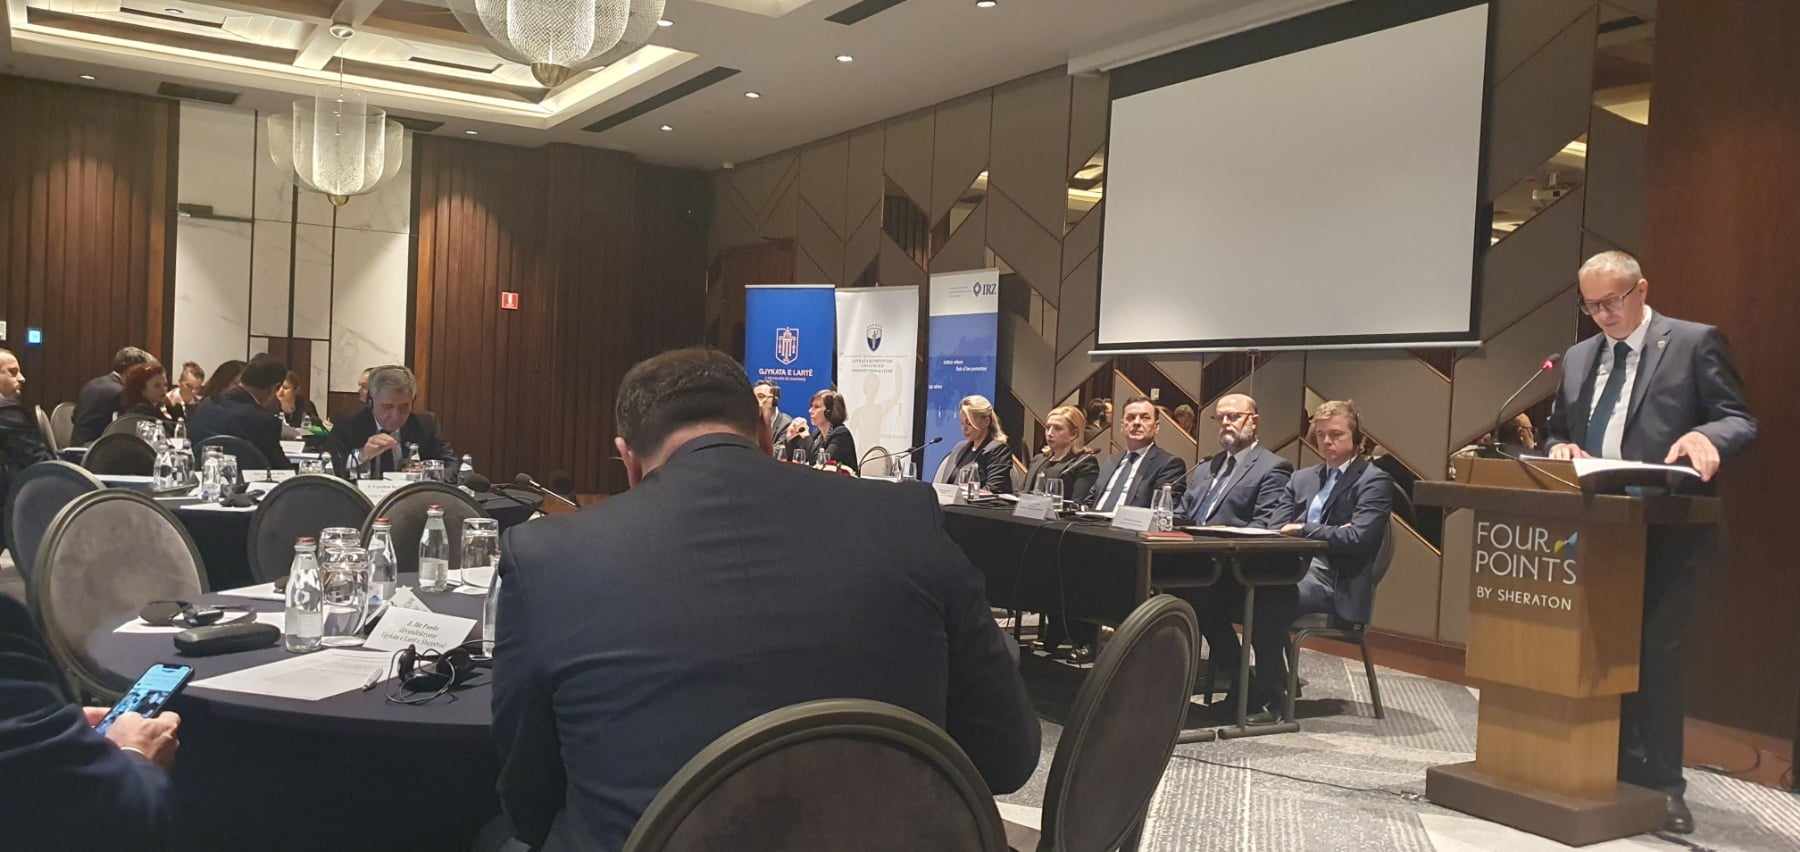 Po mbahet Konferenca e përbashkët e Gjykatës Supreme dhe Gjykatës Kushtetuese të Kosovës me gjykatat homologe nga Shqipëria